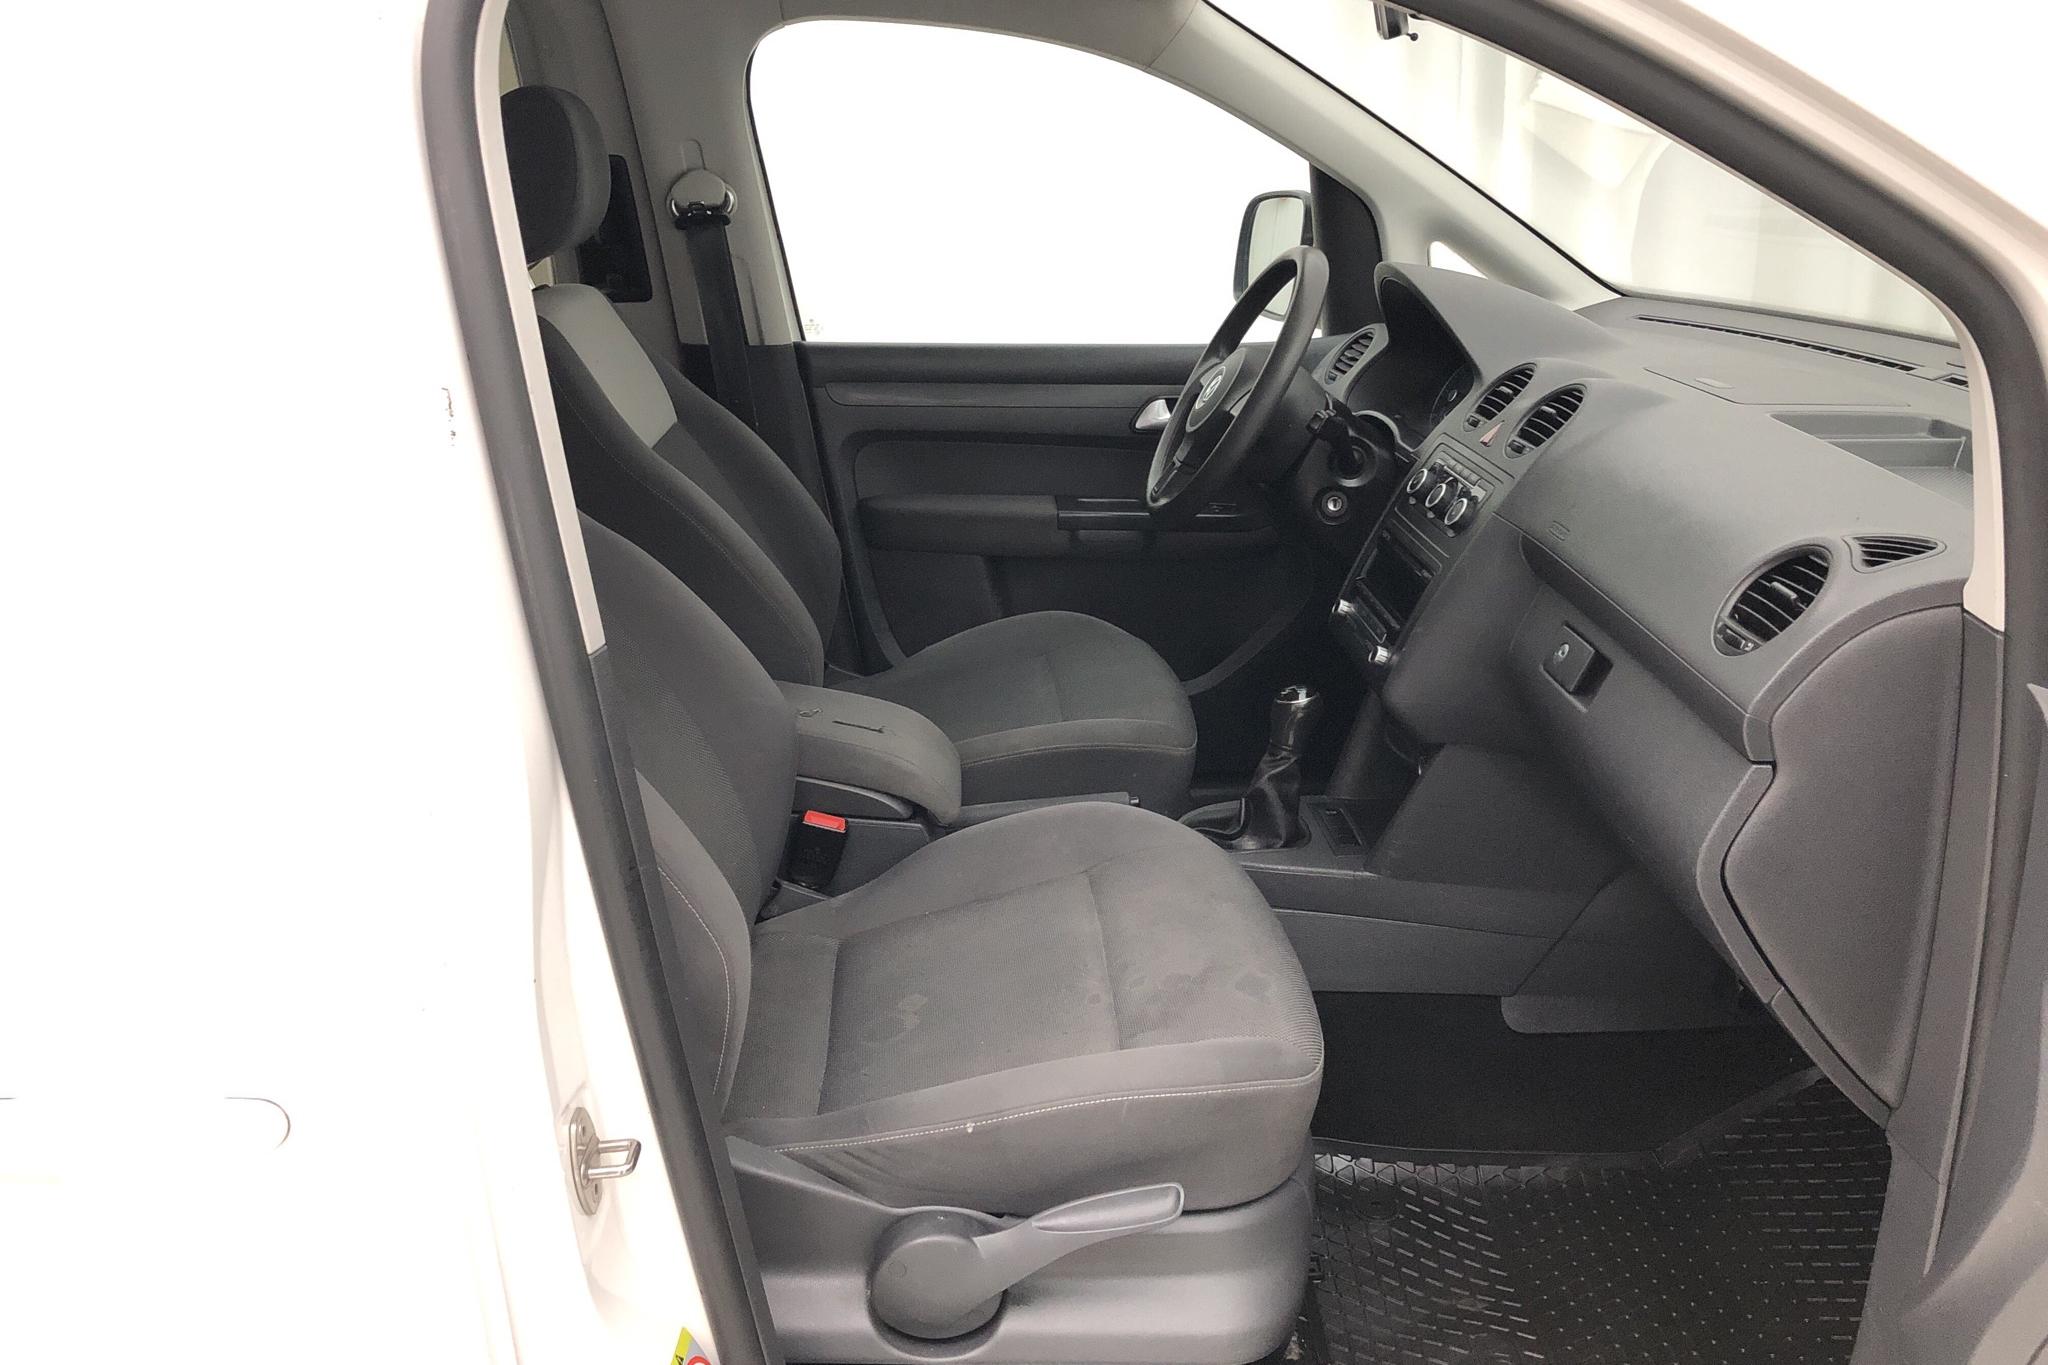 VW Caddy MPV 1.6 TDI (102hk) - 209 910 km - Manual - white - 2014